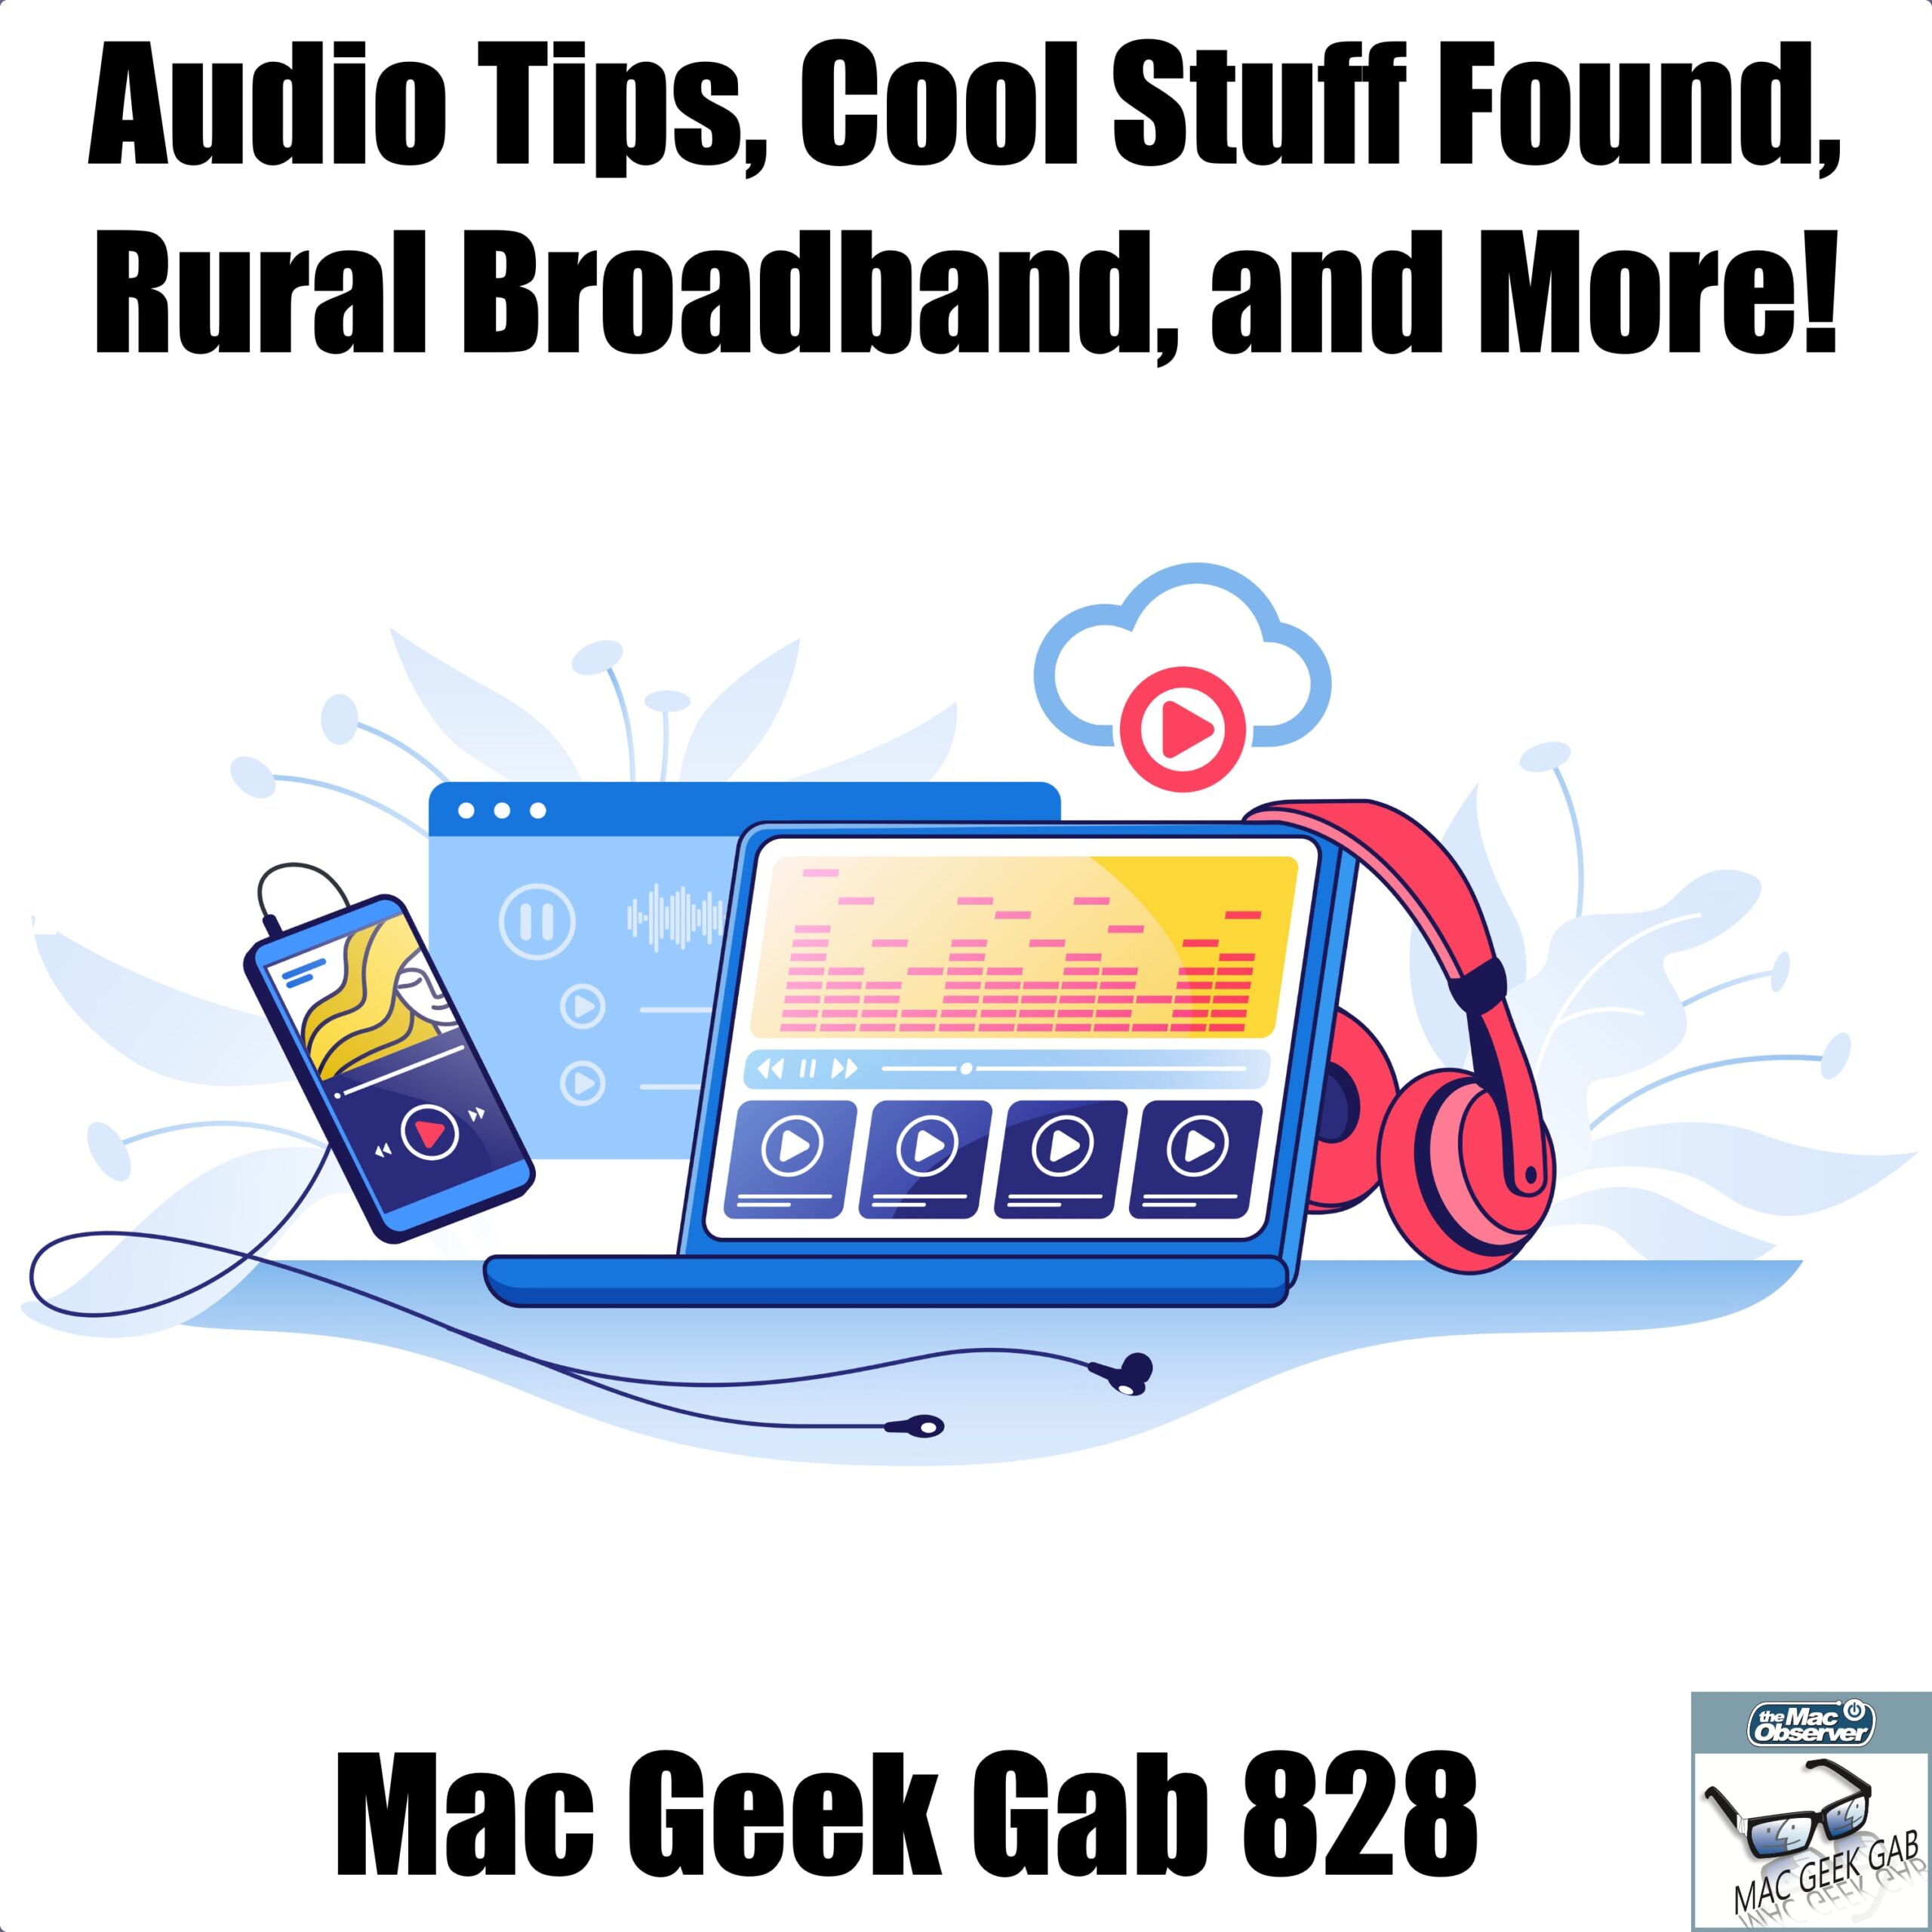 Consejos de audio, cosas interesantes encontradas, banda ancha rural y más.  - Mac Geek Gab 828